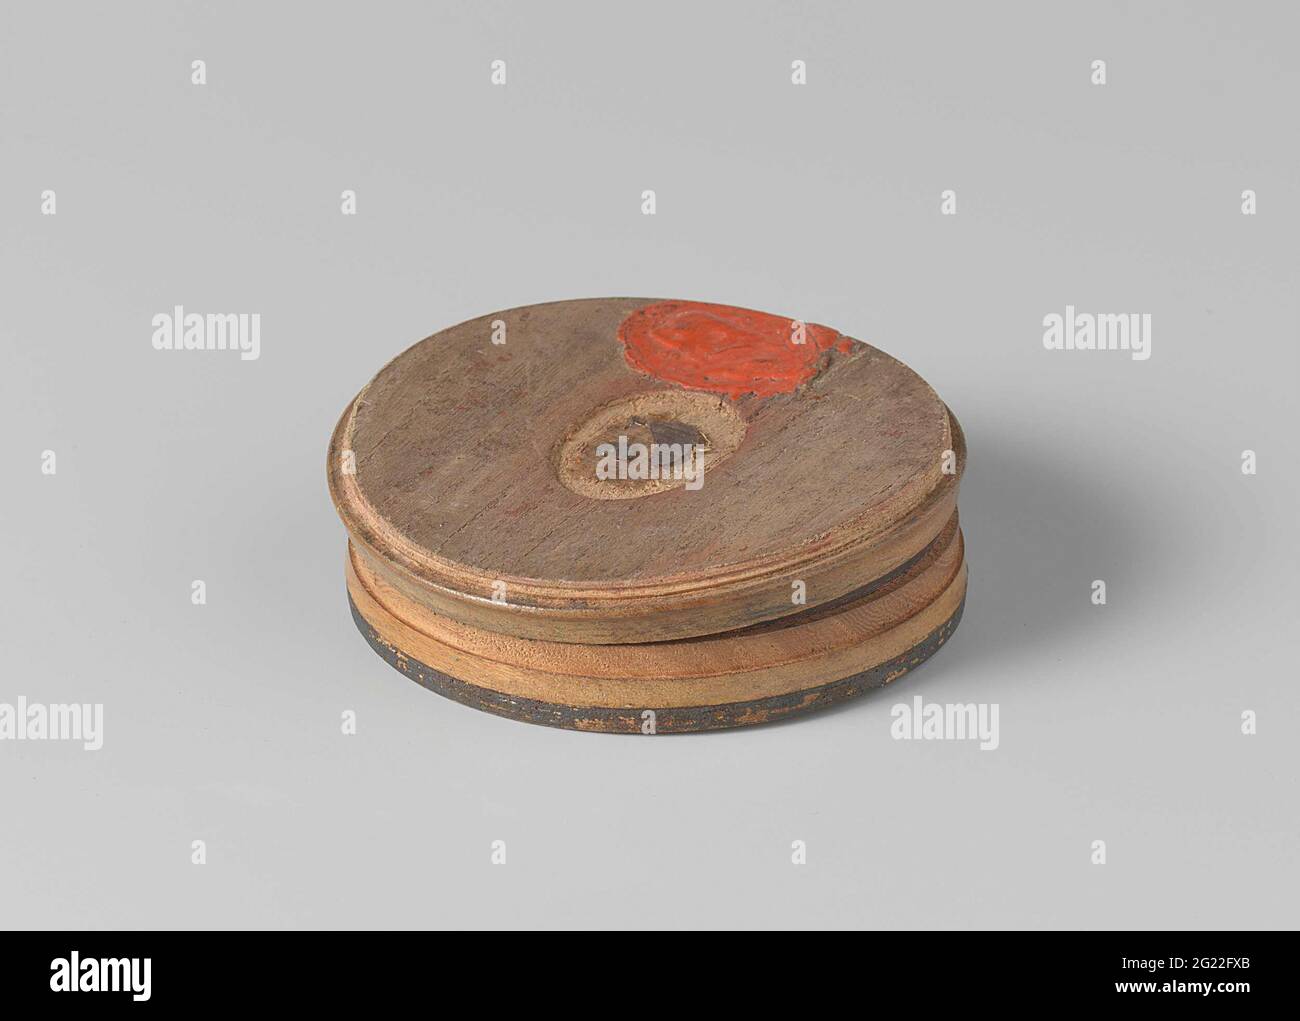 Scatola di snuff fatta dal legno della nave di Van Speijk. Scatola rotonda  in legno tornita con bordo rosso e nero e dall'interno tartaruga rossa /  nera / marrone (?). Scatola di